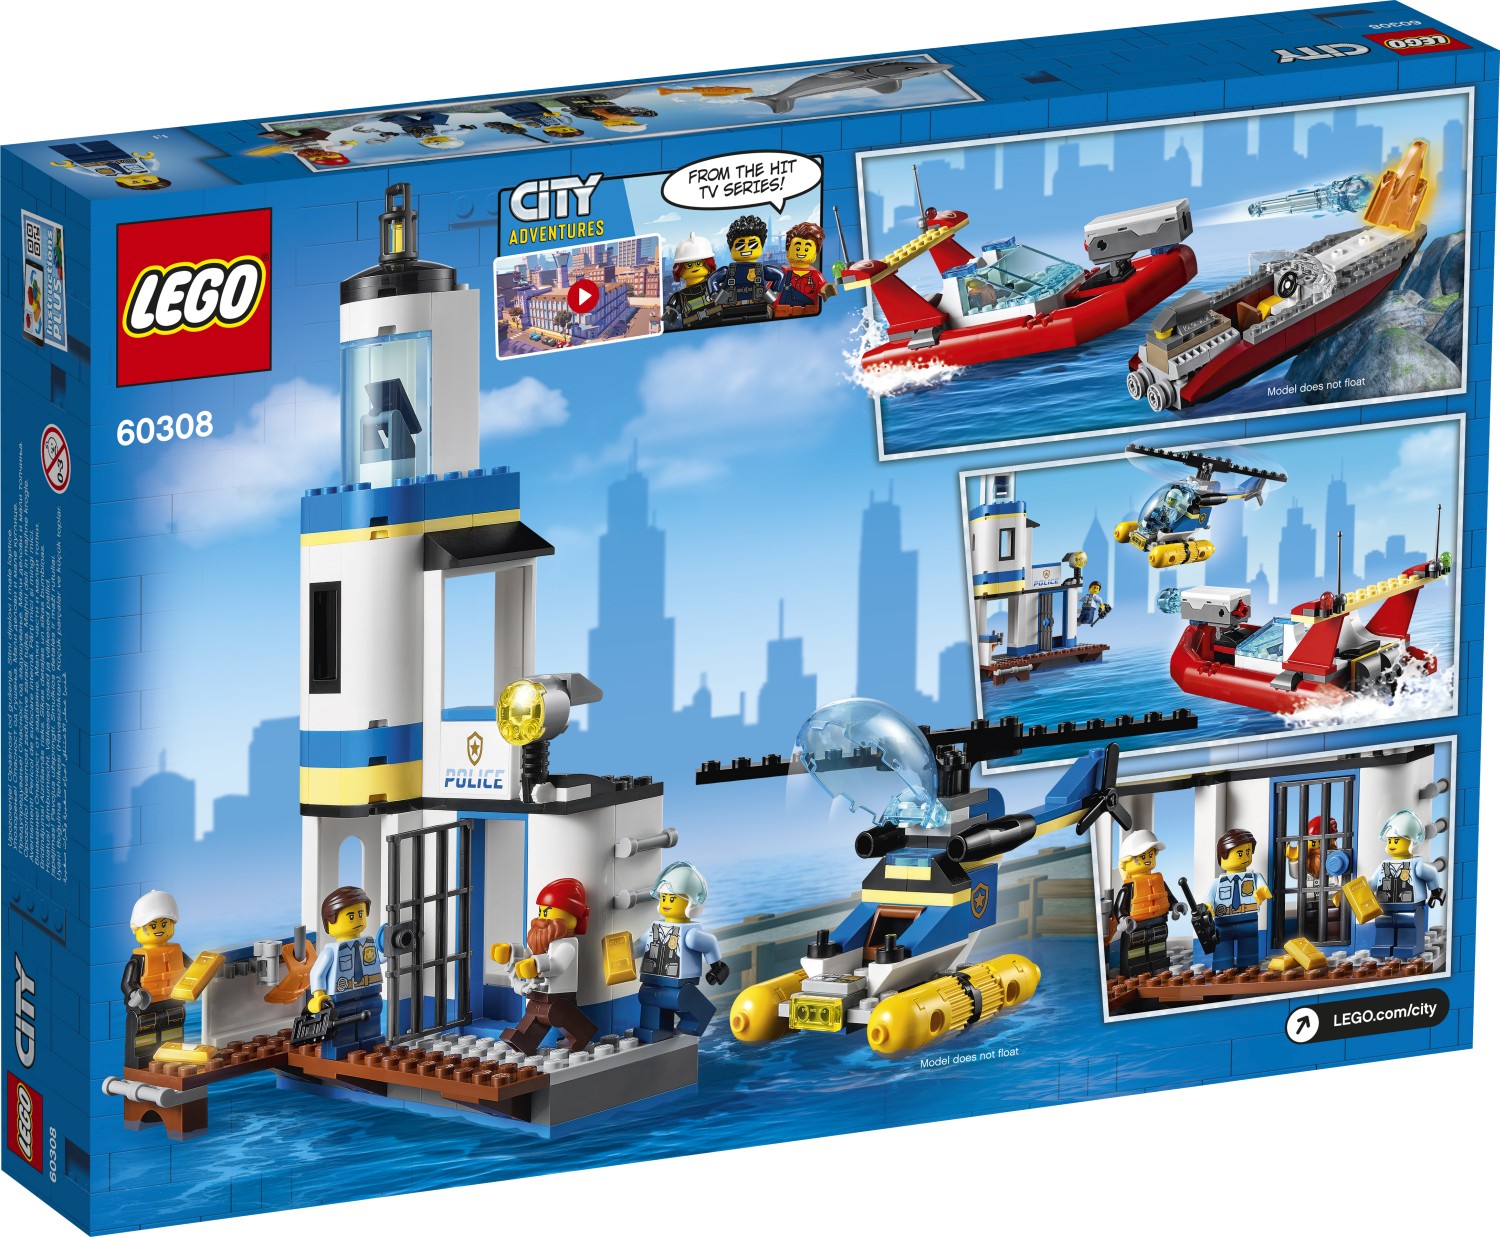 efterår skræmt hack LEGO City Seaside Police and Fire Mission (60308) Revealed - The Brick Fan